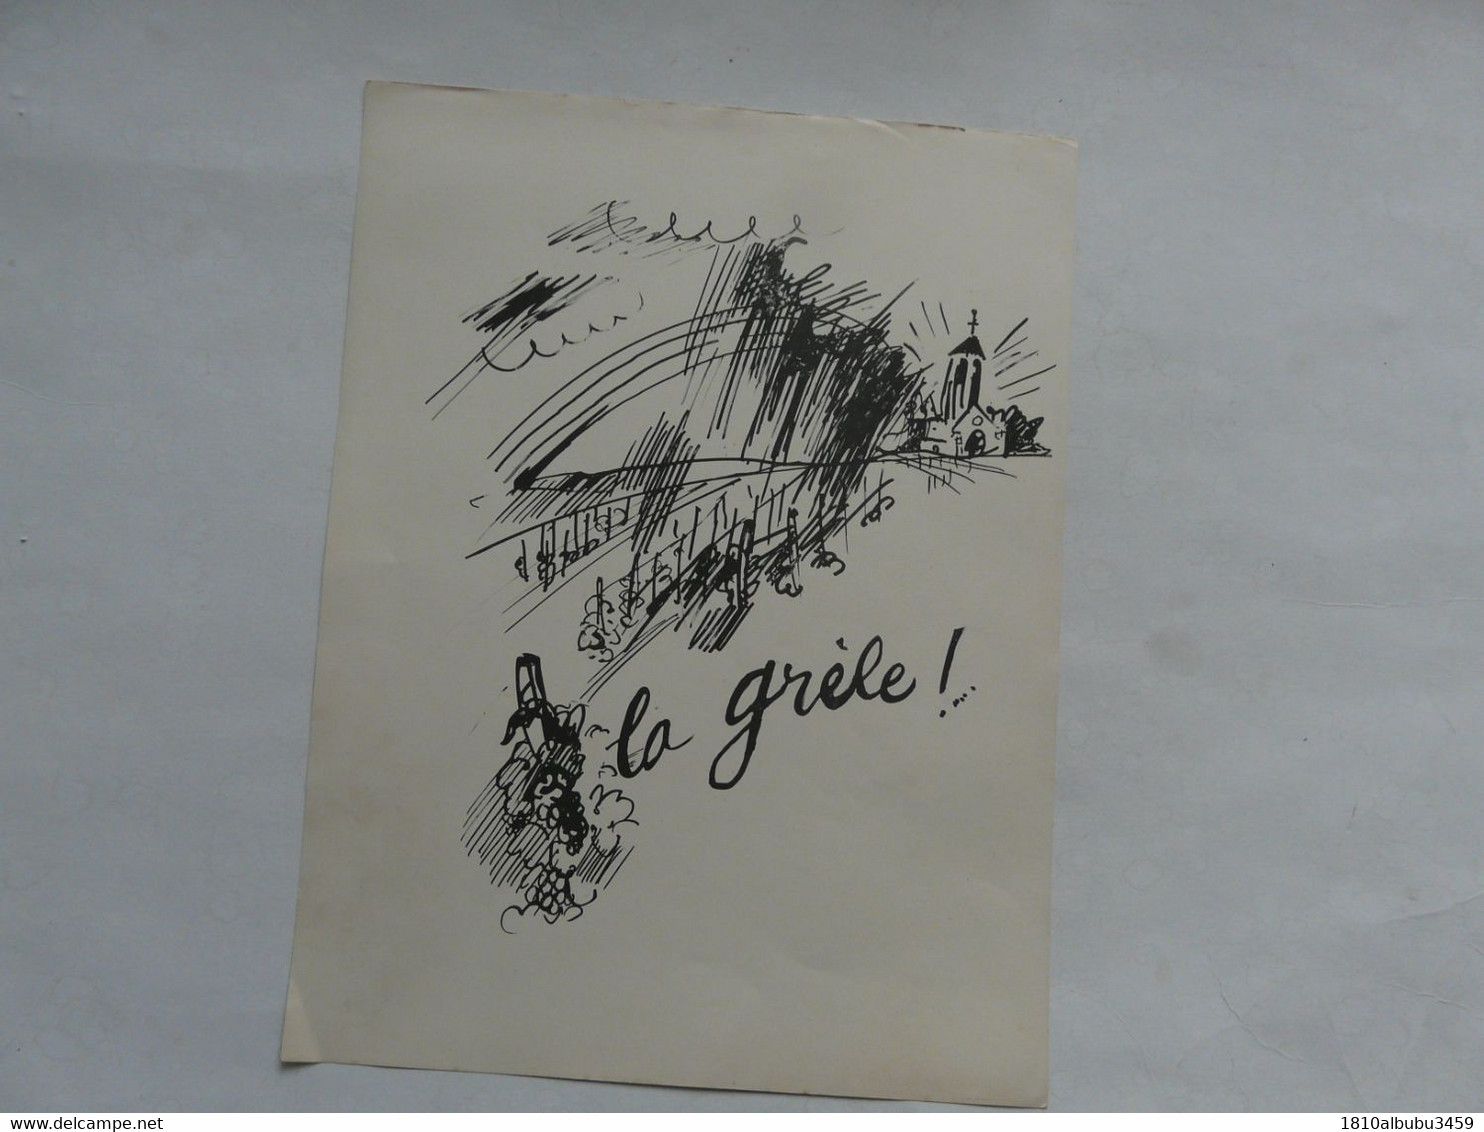 LA HALLE AUX VINS - TEXTE ET DESSINS DE CH. GIR - Exemplaire numéroté et signé 1934